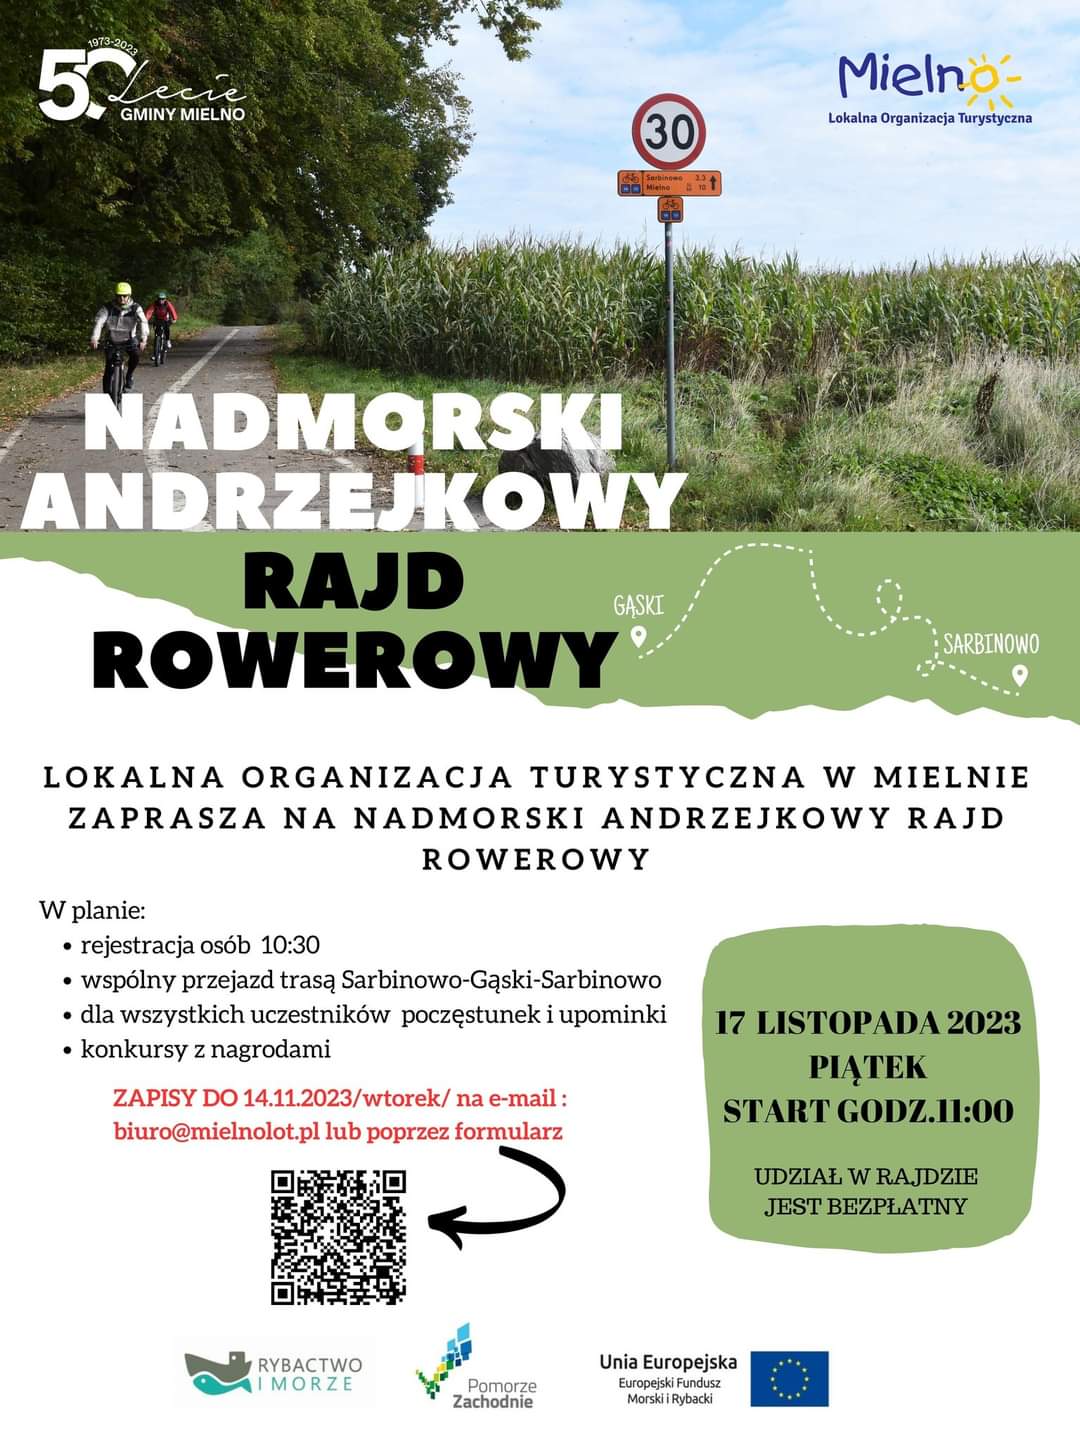 Plakat z zaproszeniem na nadmorski andrzejkowy rajd rowerowy w Mielnie 17 listopada 2023